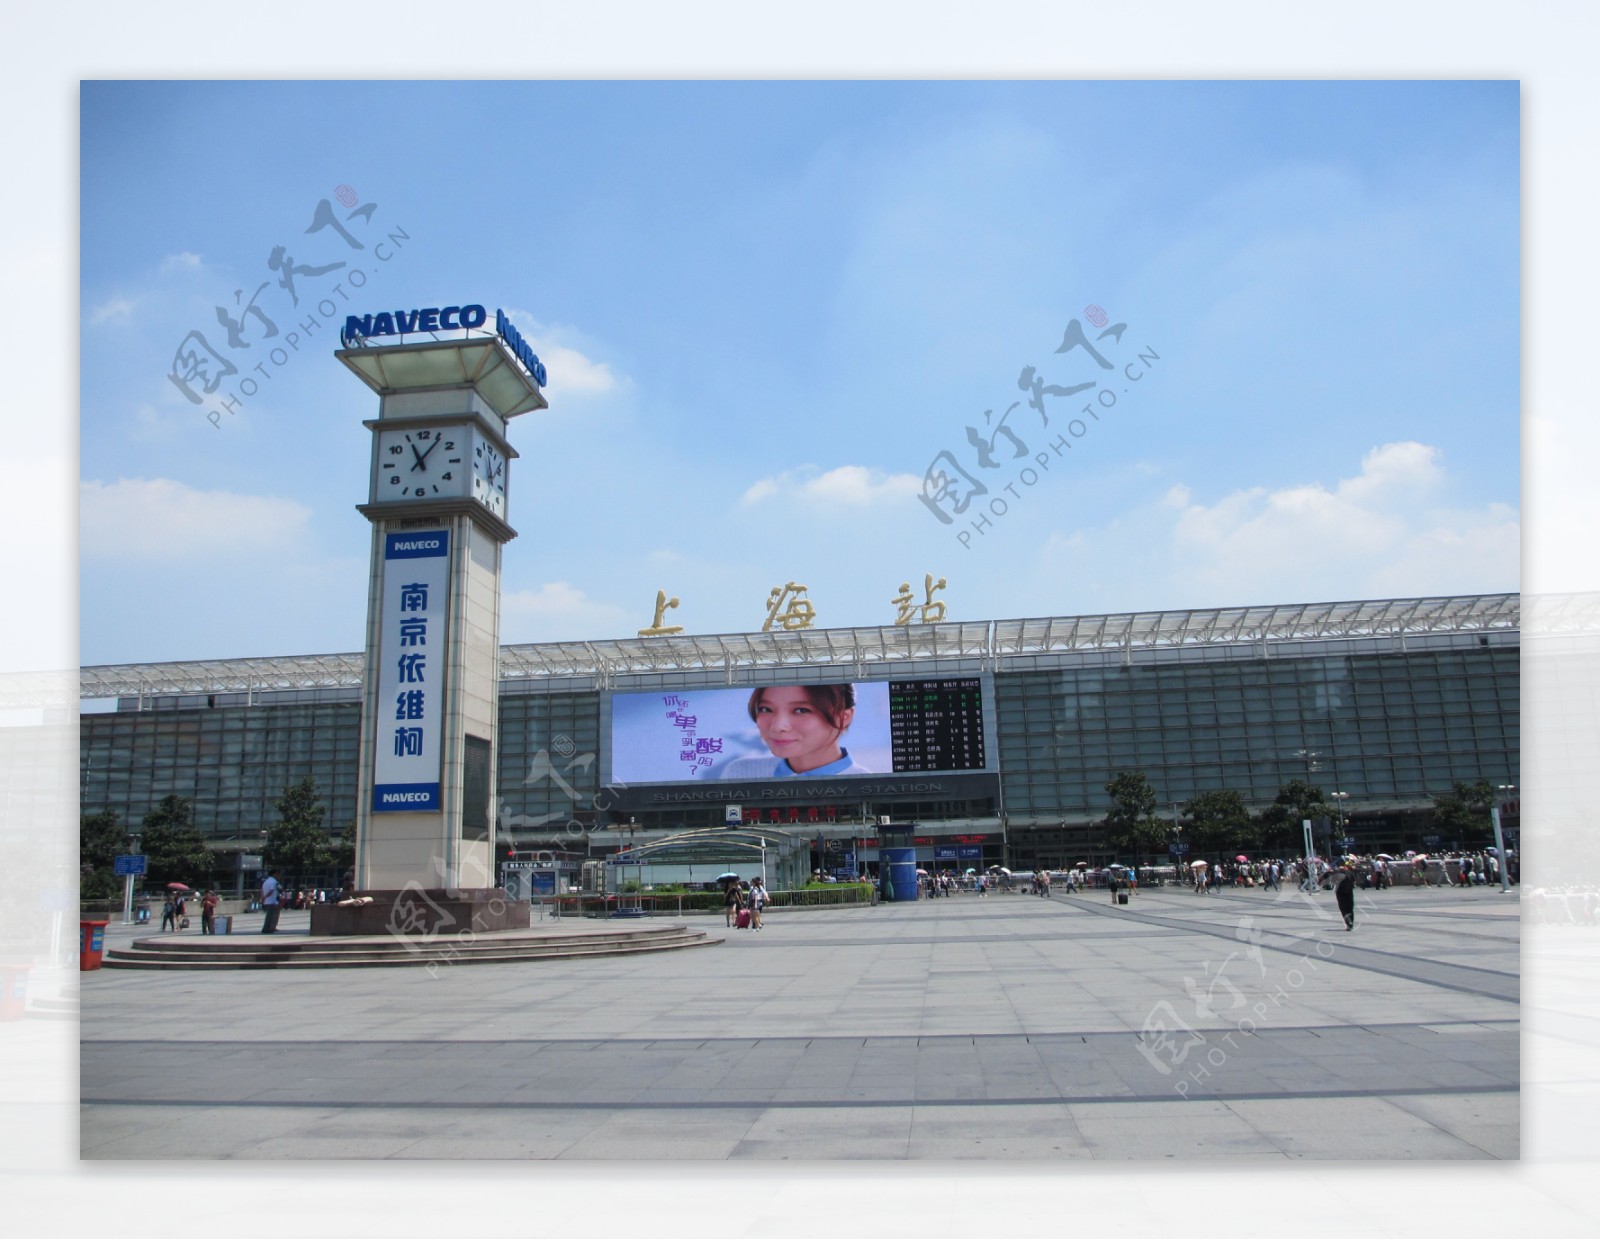 上海火车站广告屏图片